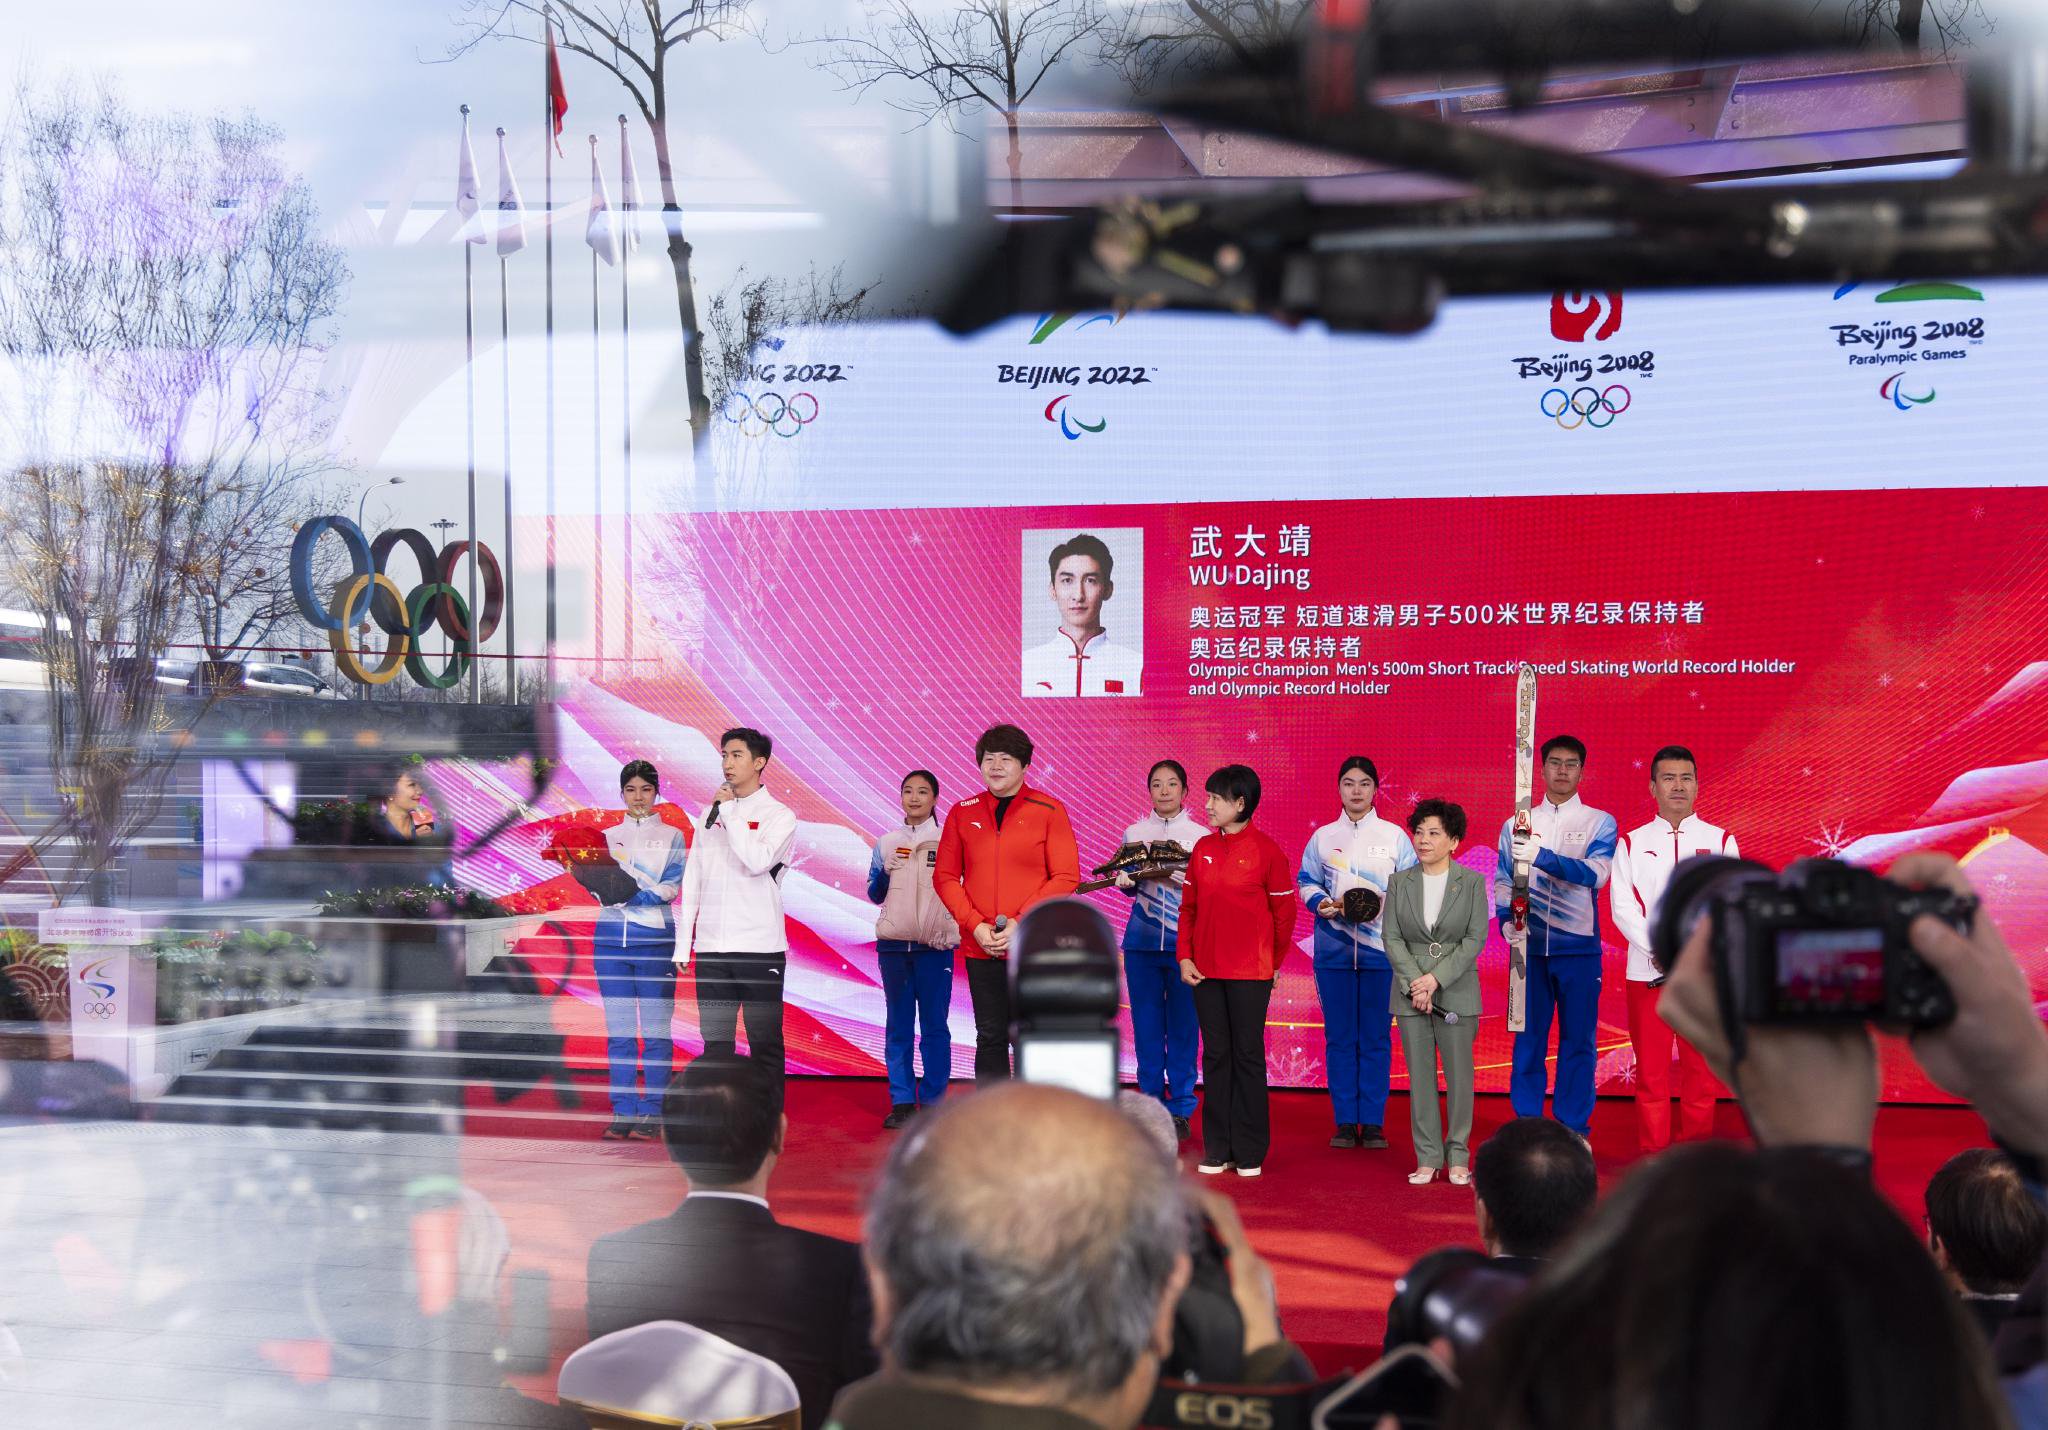 開館儀式上，冠軍運動員葉祖波、丹恩亞萍、佟文、武大靖、韓曉鵬向北京奧運博物館捐贈了個人藏品。  新京報記者 陶冉 攝